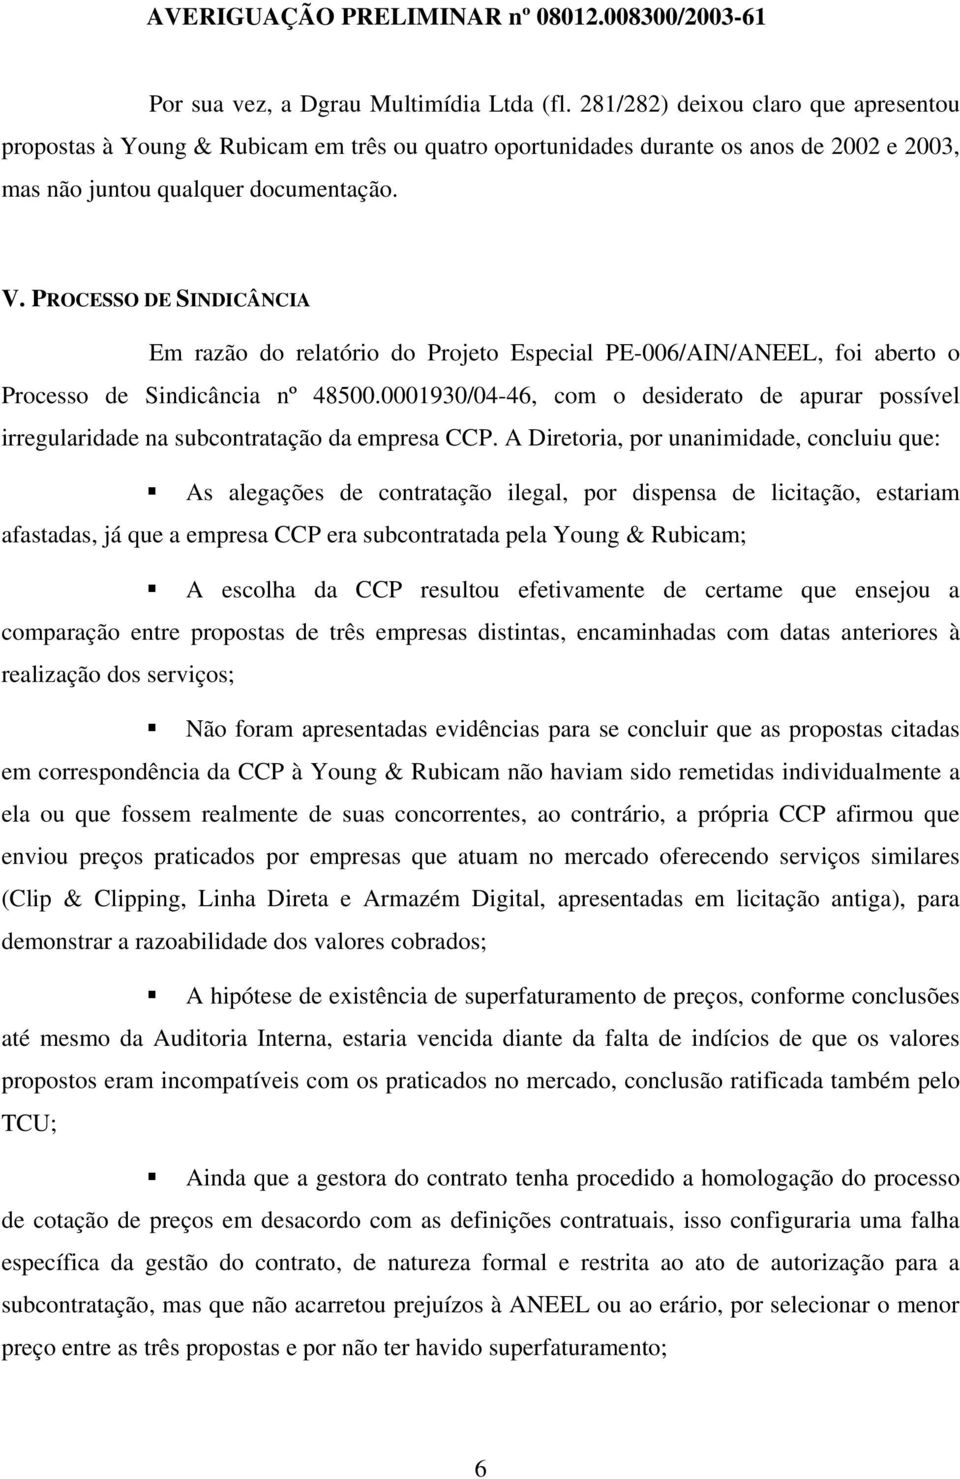 PROCESSO DE SINDICÂNCIA Em razão do relatório do Projeto Especial PE-006/AIN/ANEEL, foi aberto o Processo de Sindicância nº 48500.